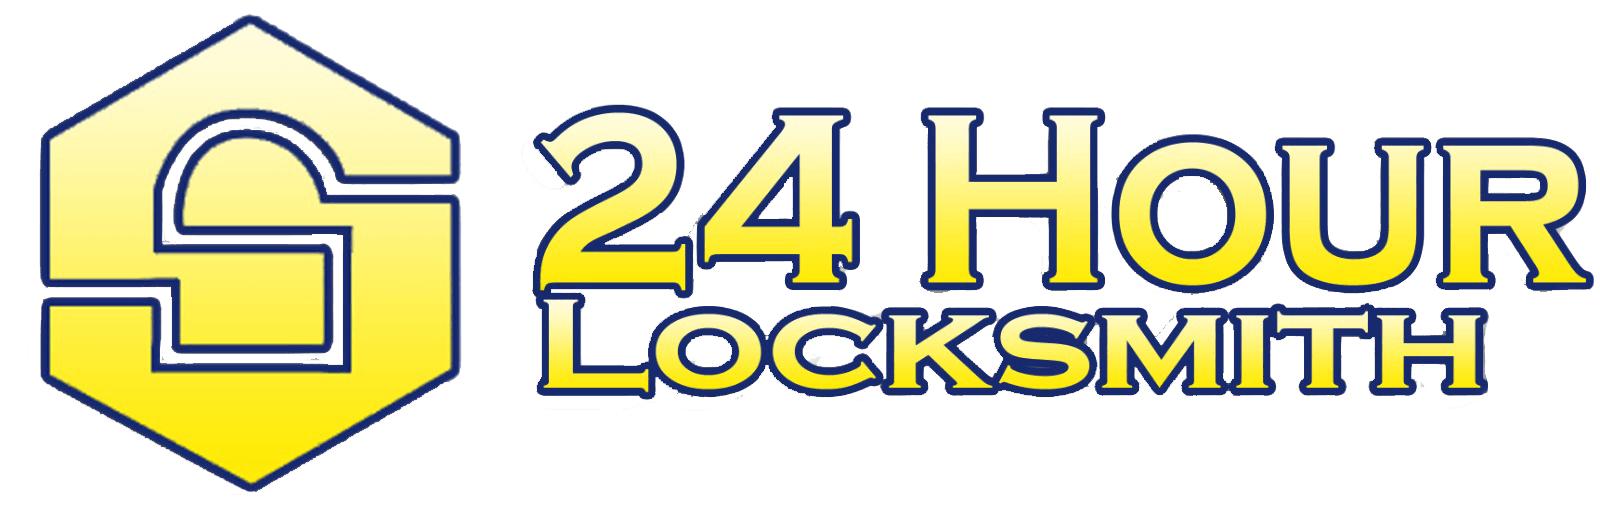 24 Hour Locksmith in Spokane, WA